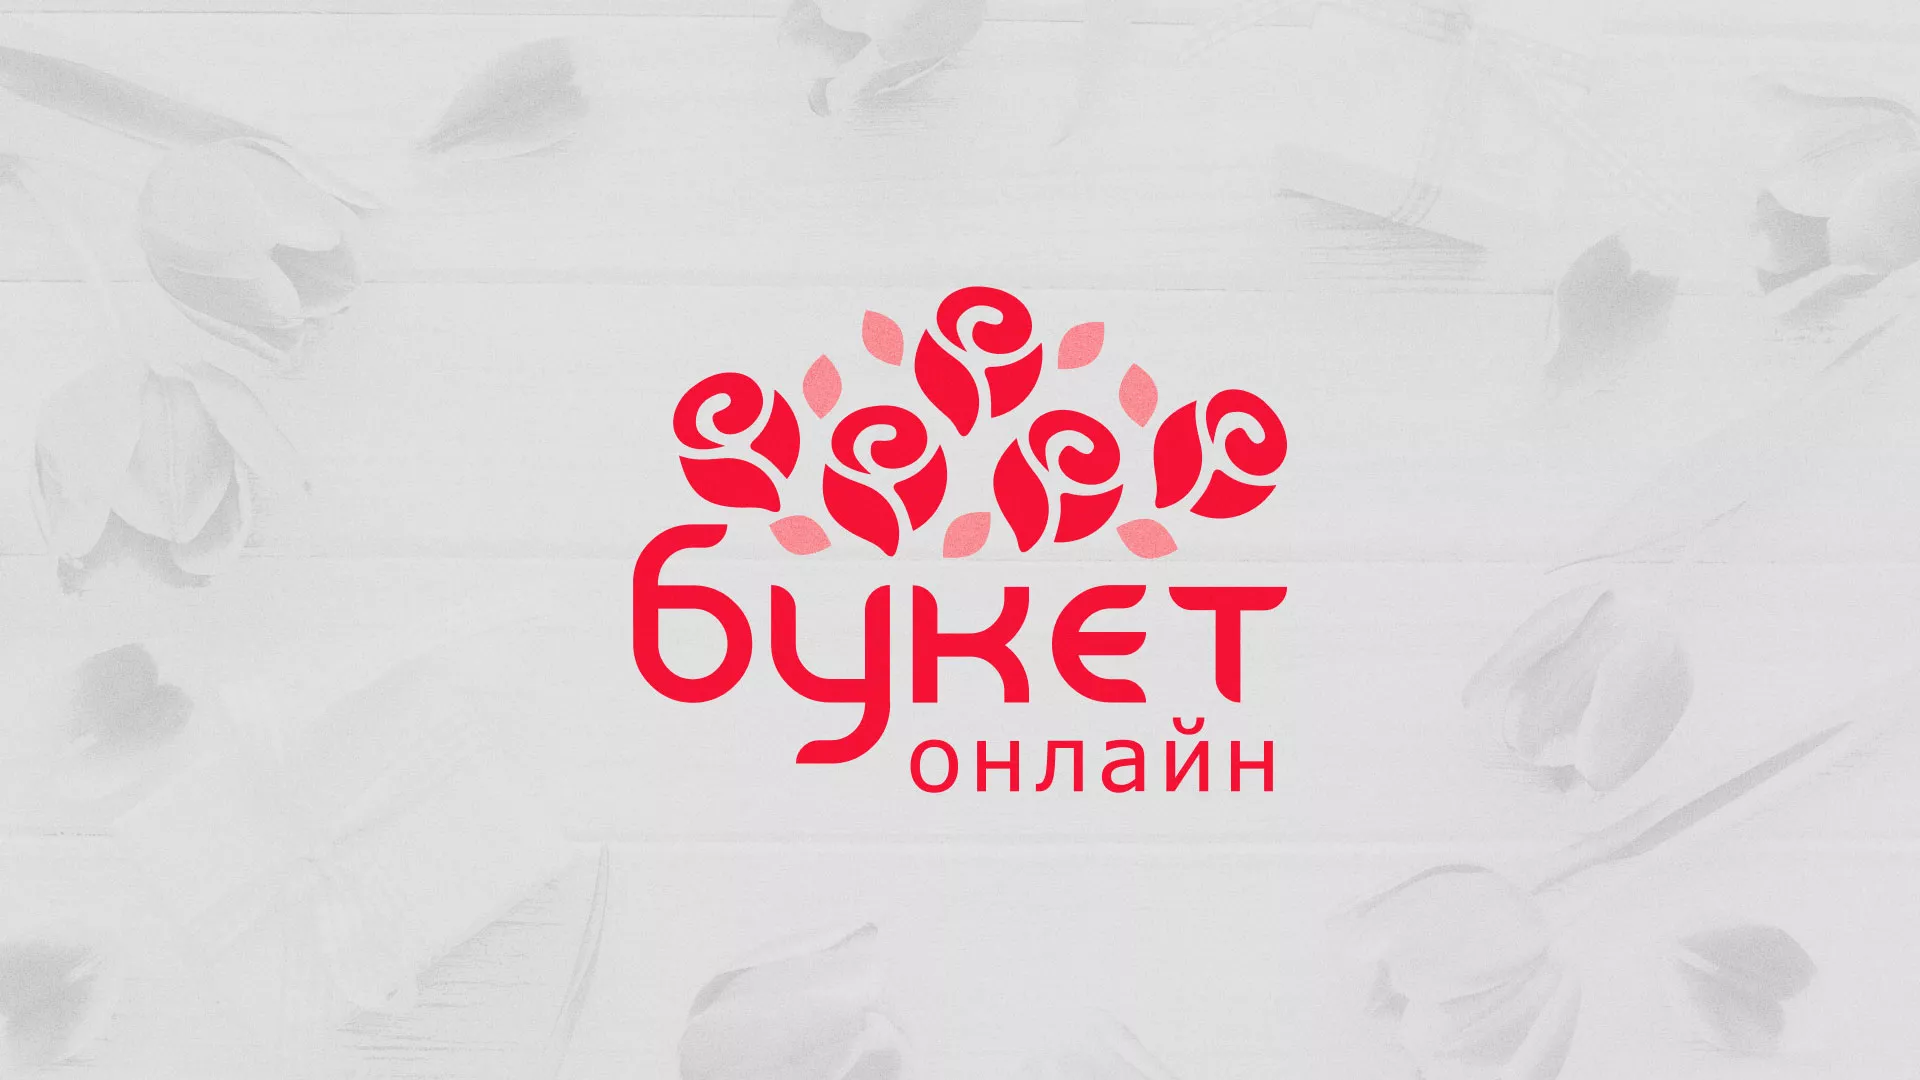 Создание интернет-магазина «Букет-онлайн» по цветам в Березниках